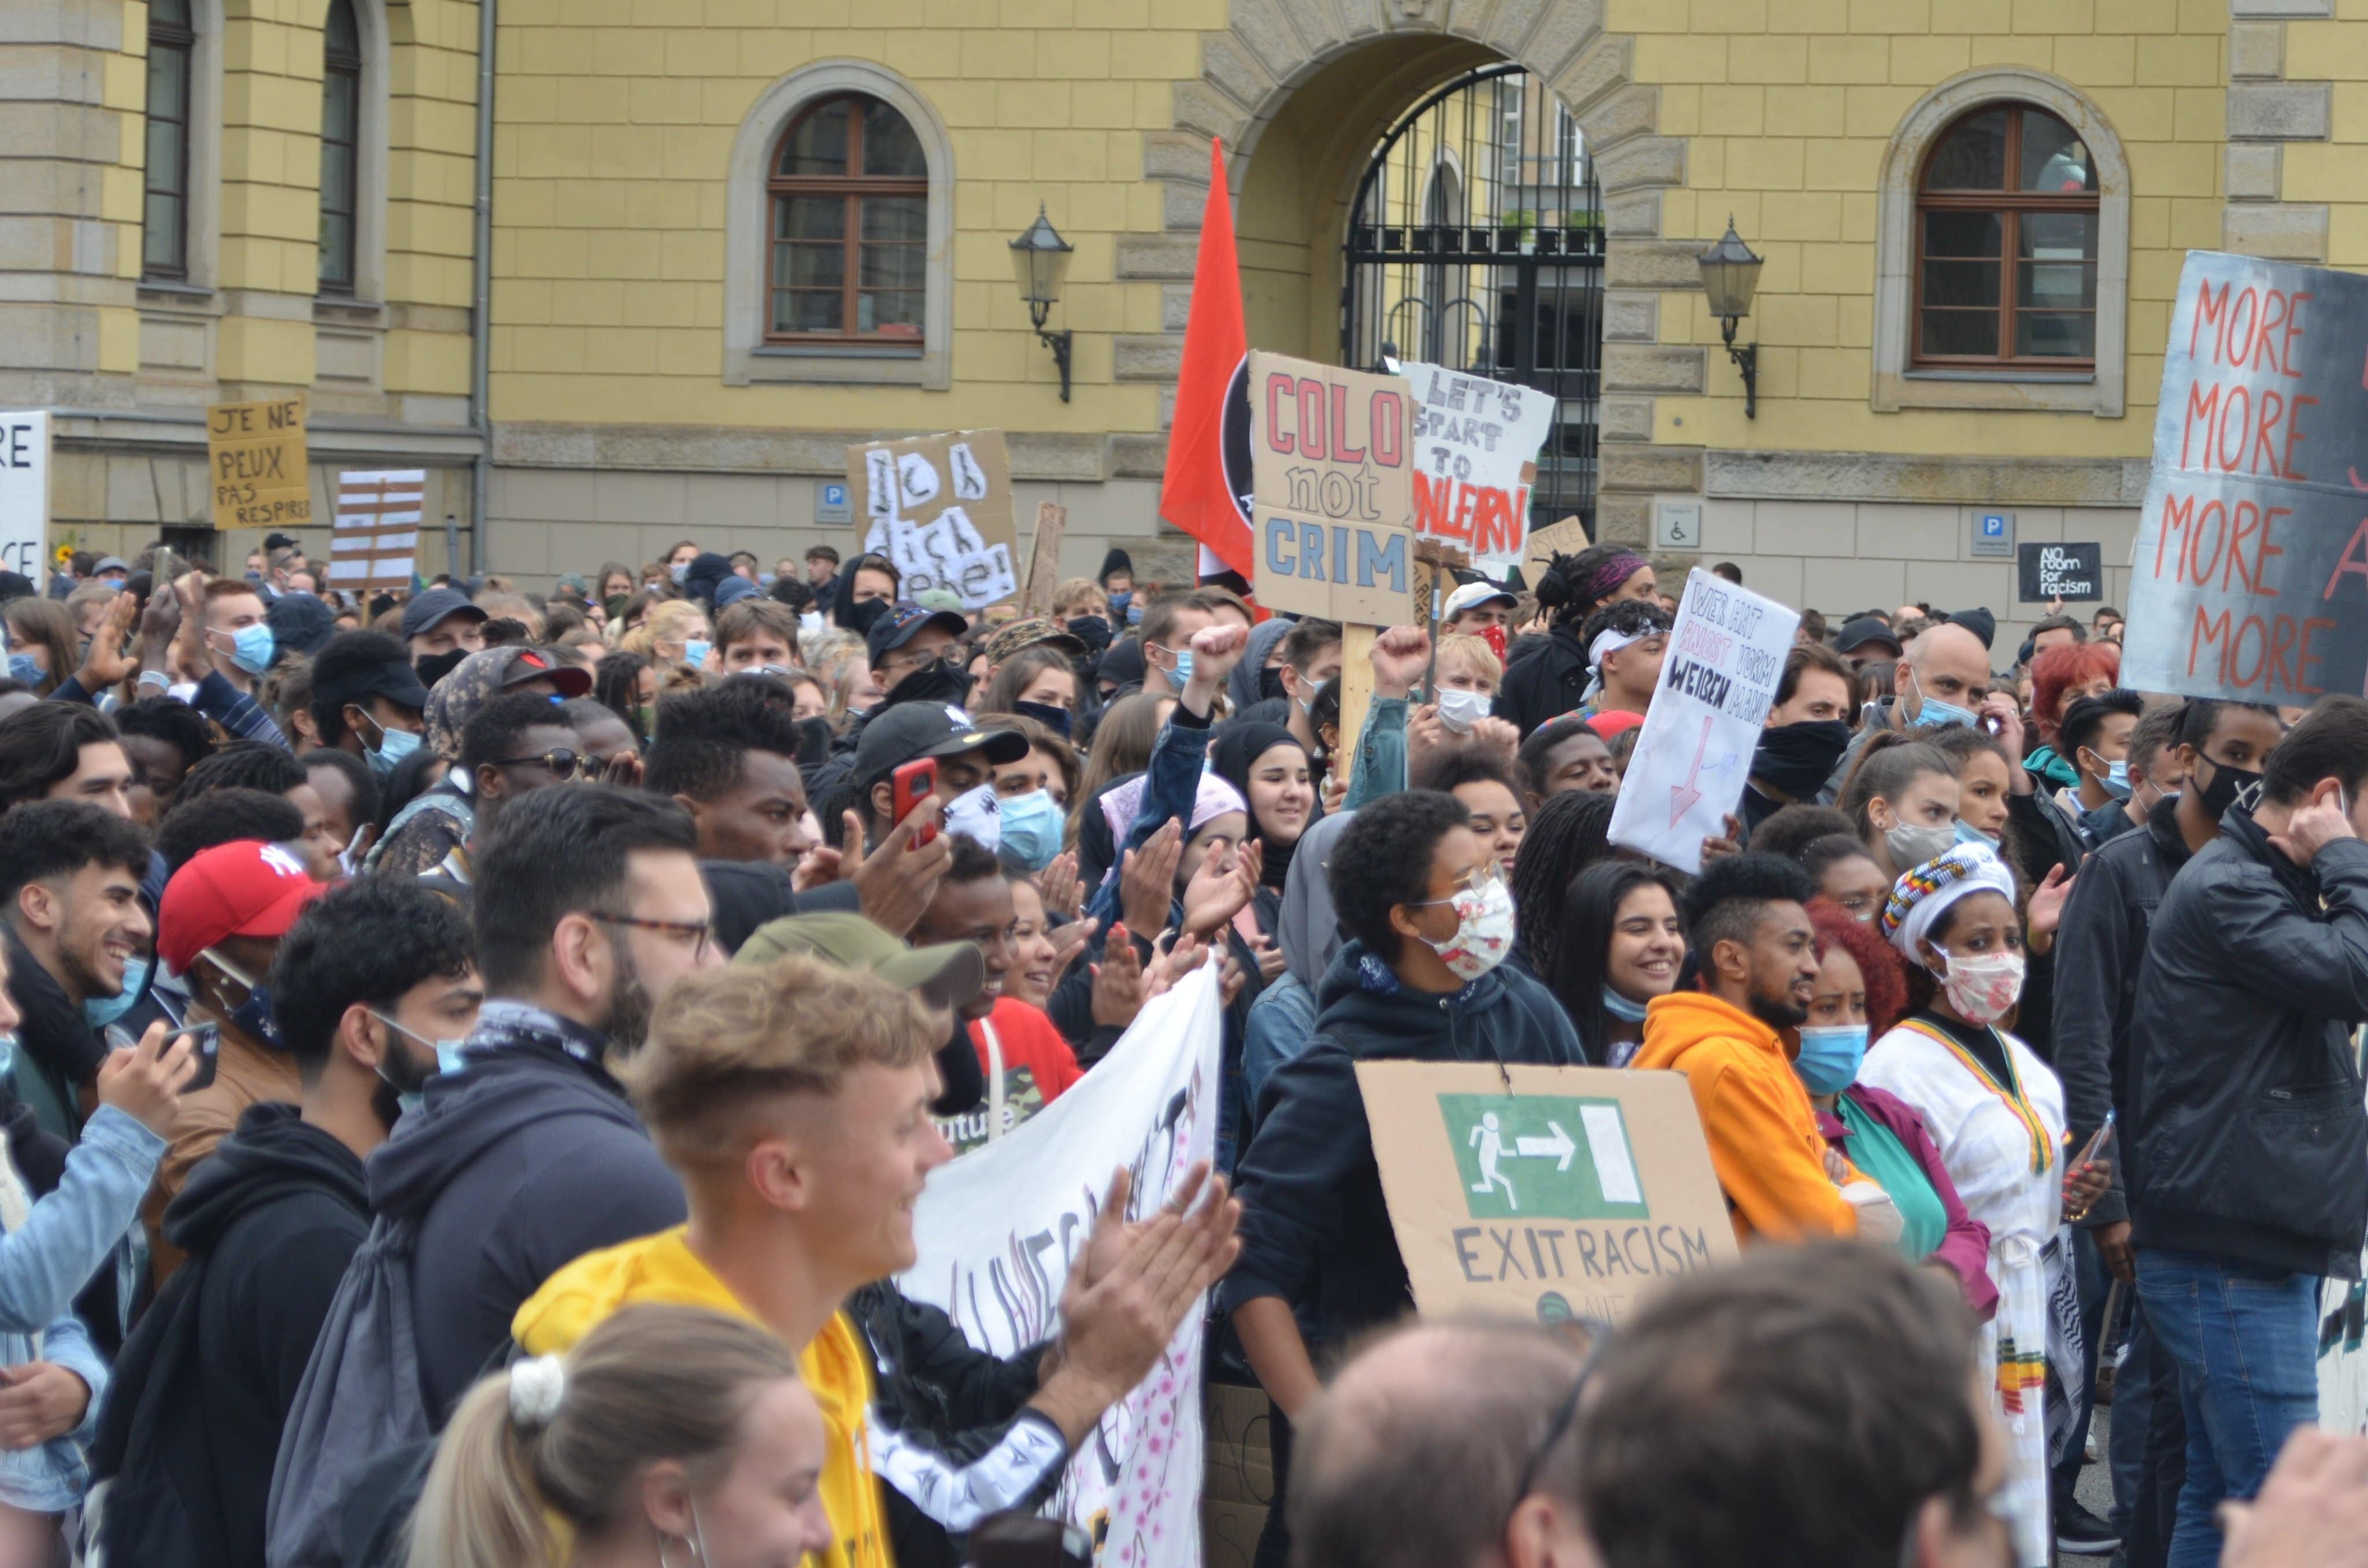   »Leipzig hat noch einen weiten Weg vor sich« | Aktivistinnen im Gespräch über ihre Erfahrungen als Schwarze Frauen in Leipzig  